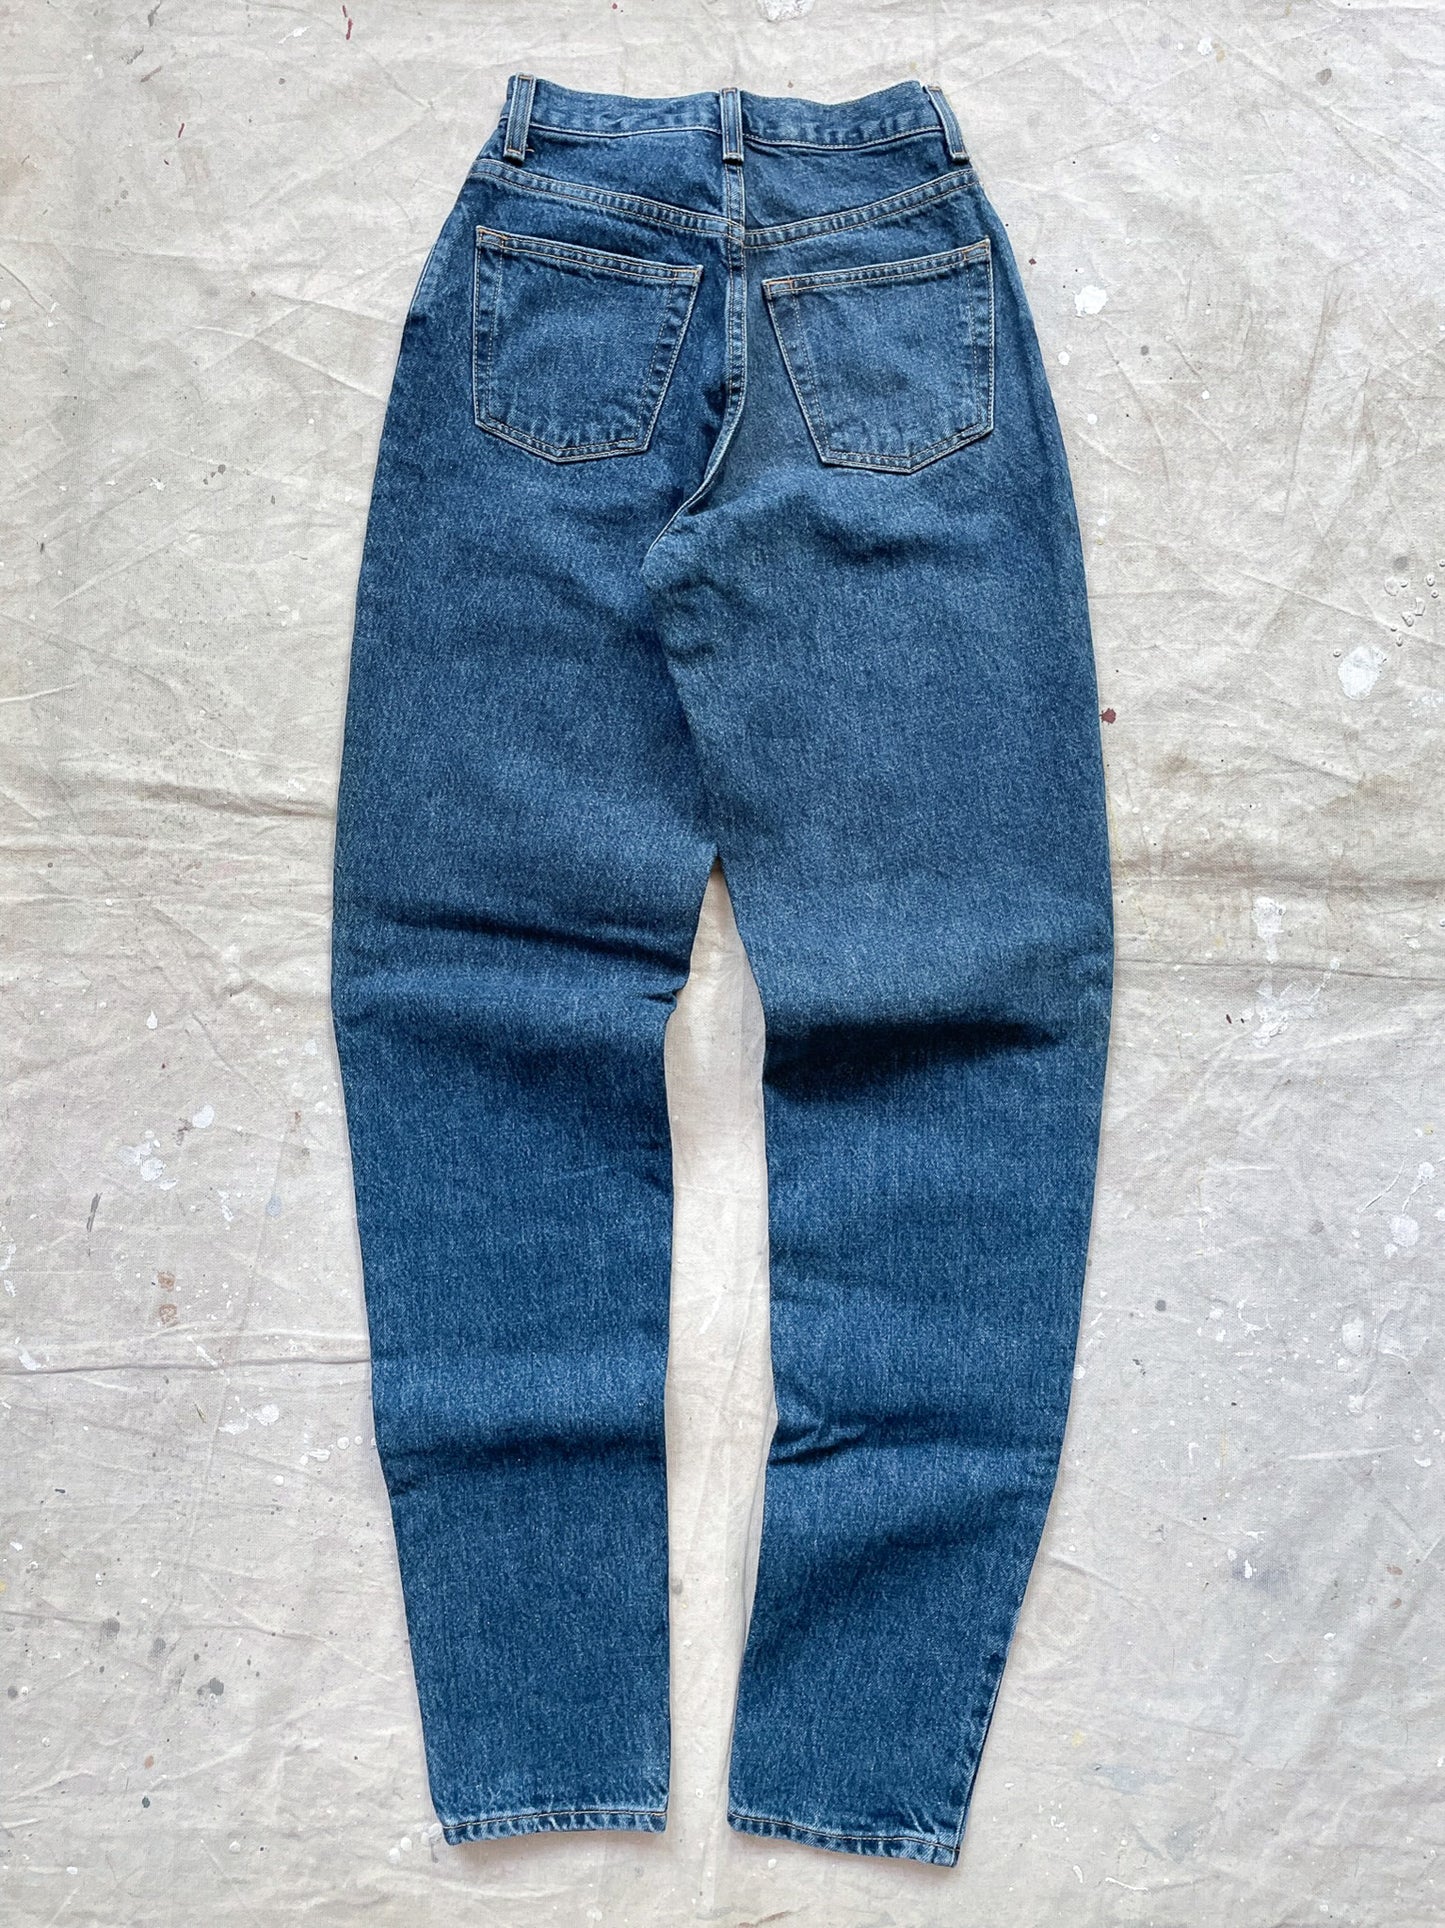 90's GAP Reverse Fit Jeans—[23x35]